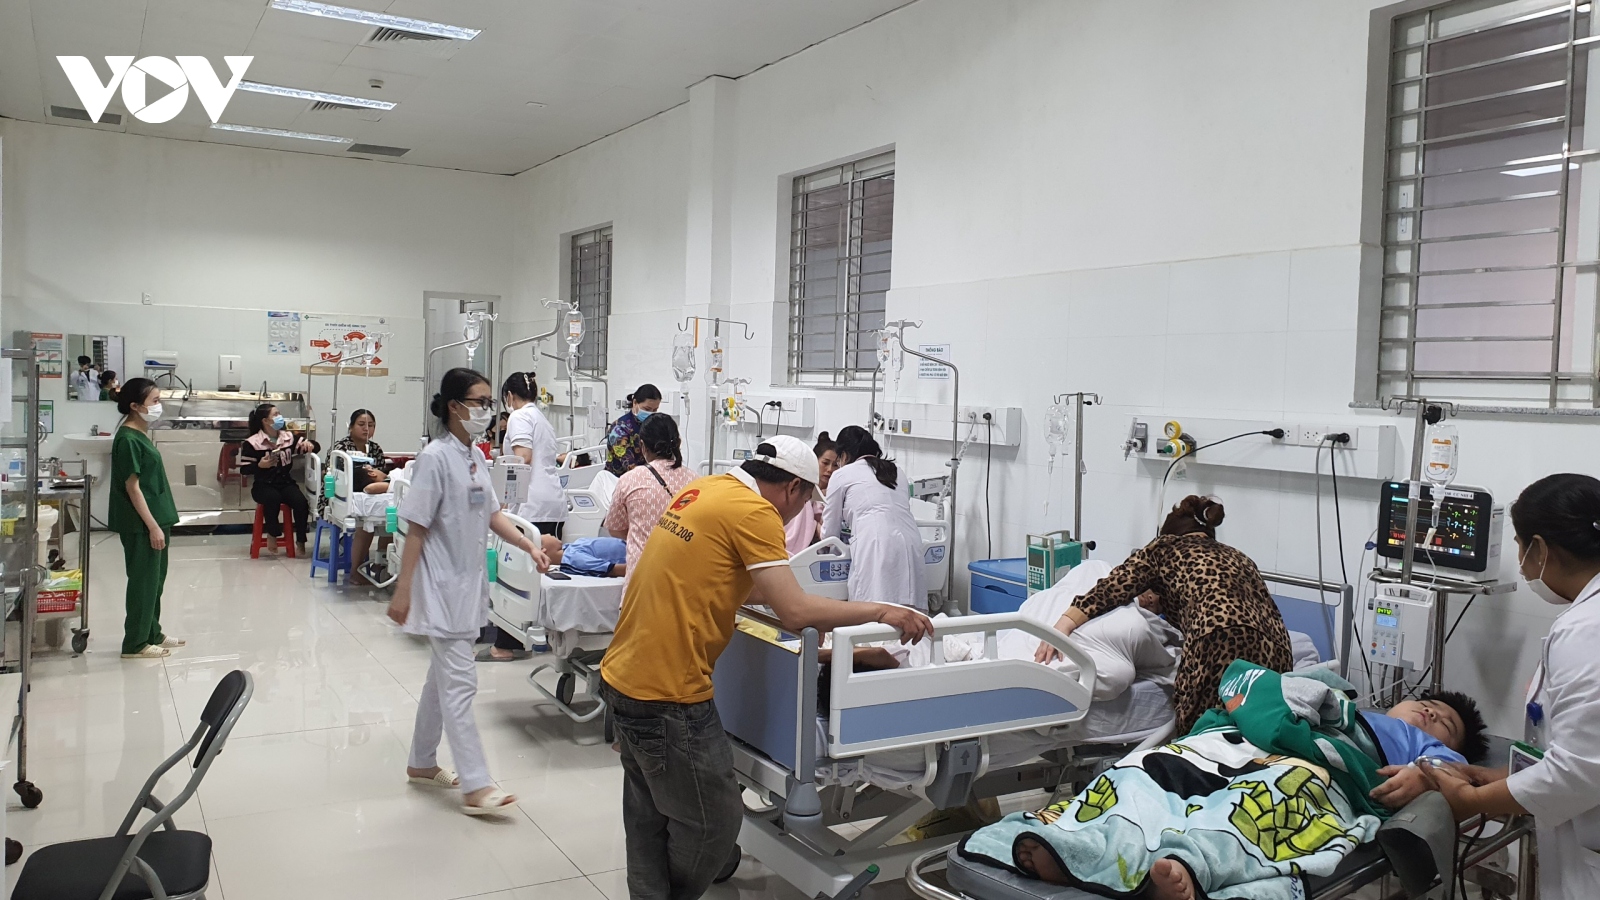 Kiên Giang: Số lượng học sinh bị ngộ độc tập thể tăng lên gần 80 em